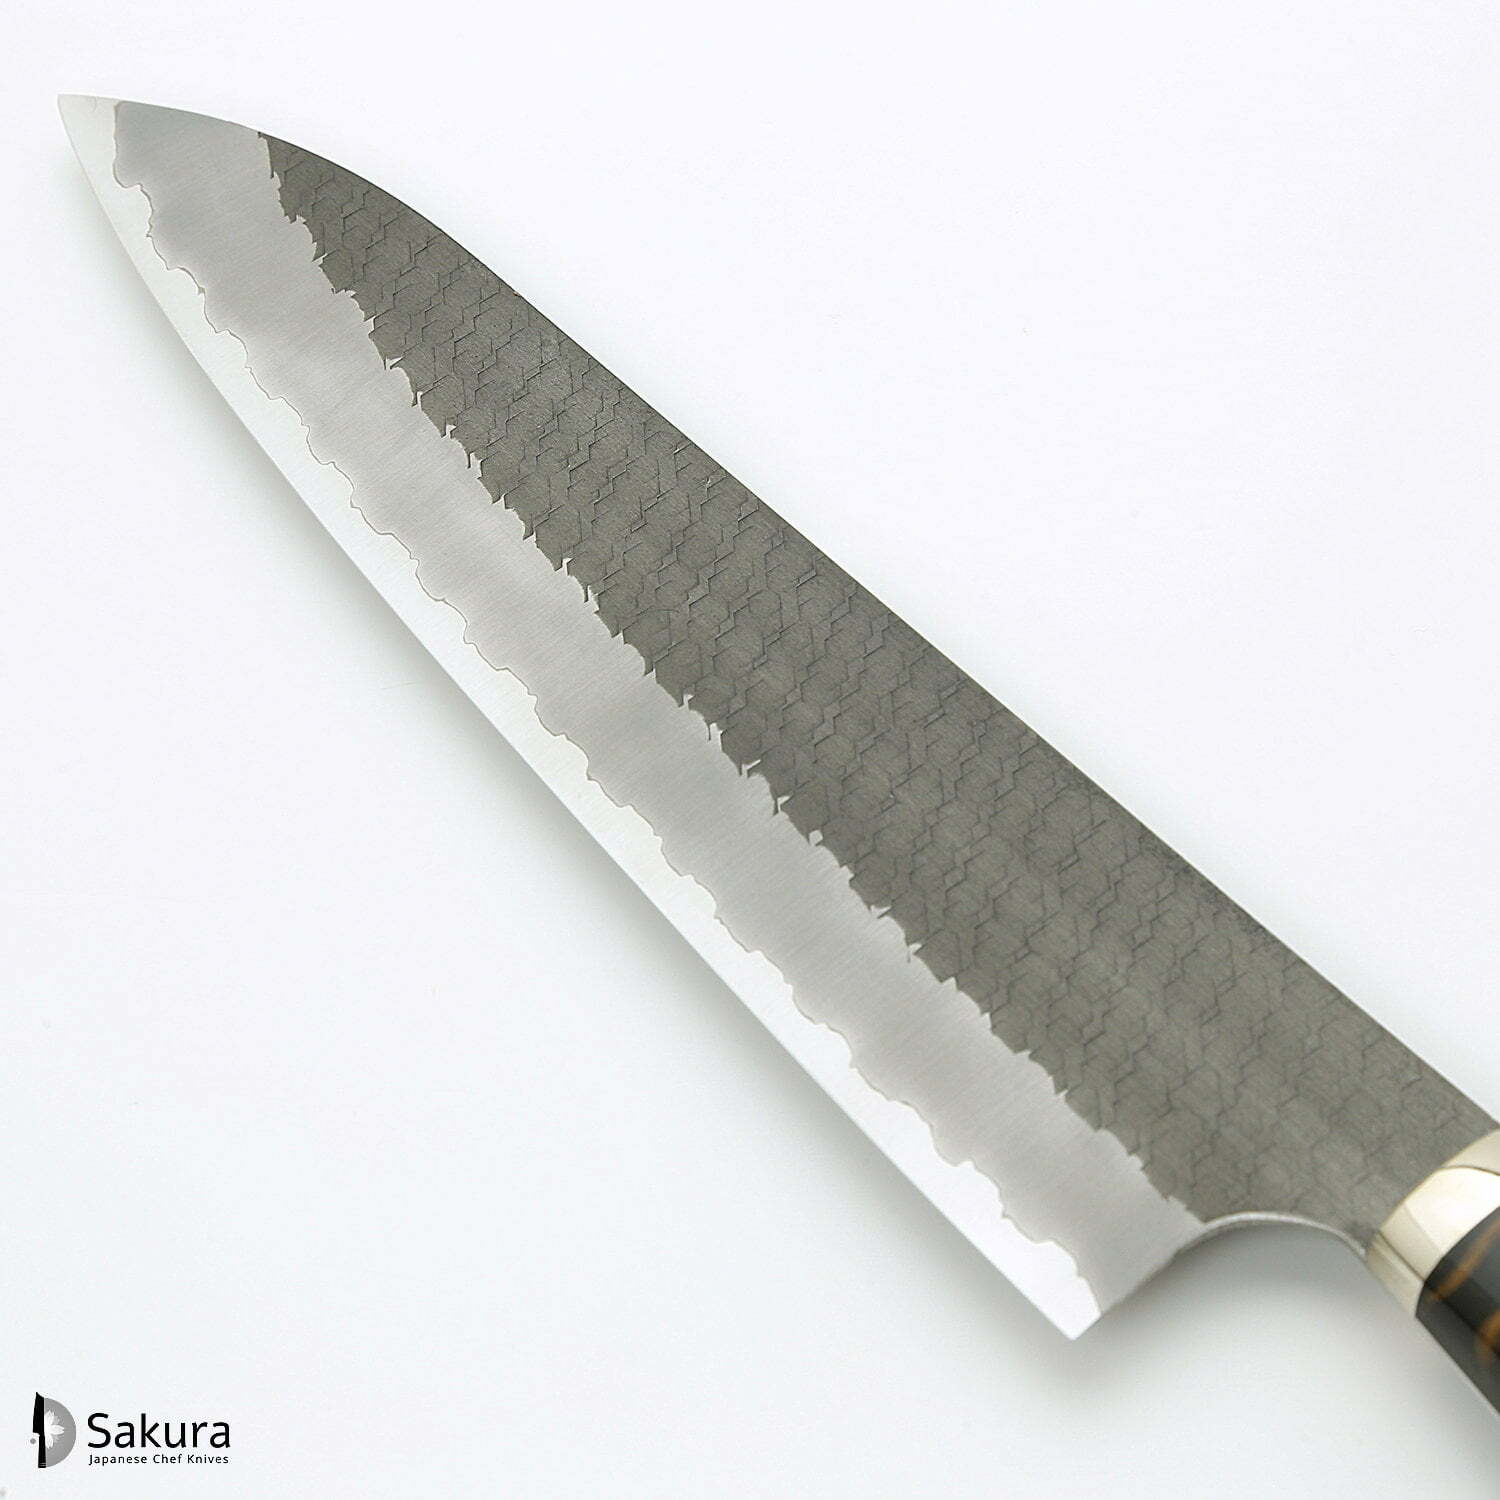 סכין שף רב-תכליתית גִּיוּטוֹ 240מ״מ מחושלת בעבודת יד 3 שכבות: פלדת פחמן יפנית מתקדמת מסוג R2/SG2 עטופה פלדת אל-חלד גימור קורואיצ׳י שחור עם ריקוע פטיש ניגארה יפן